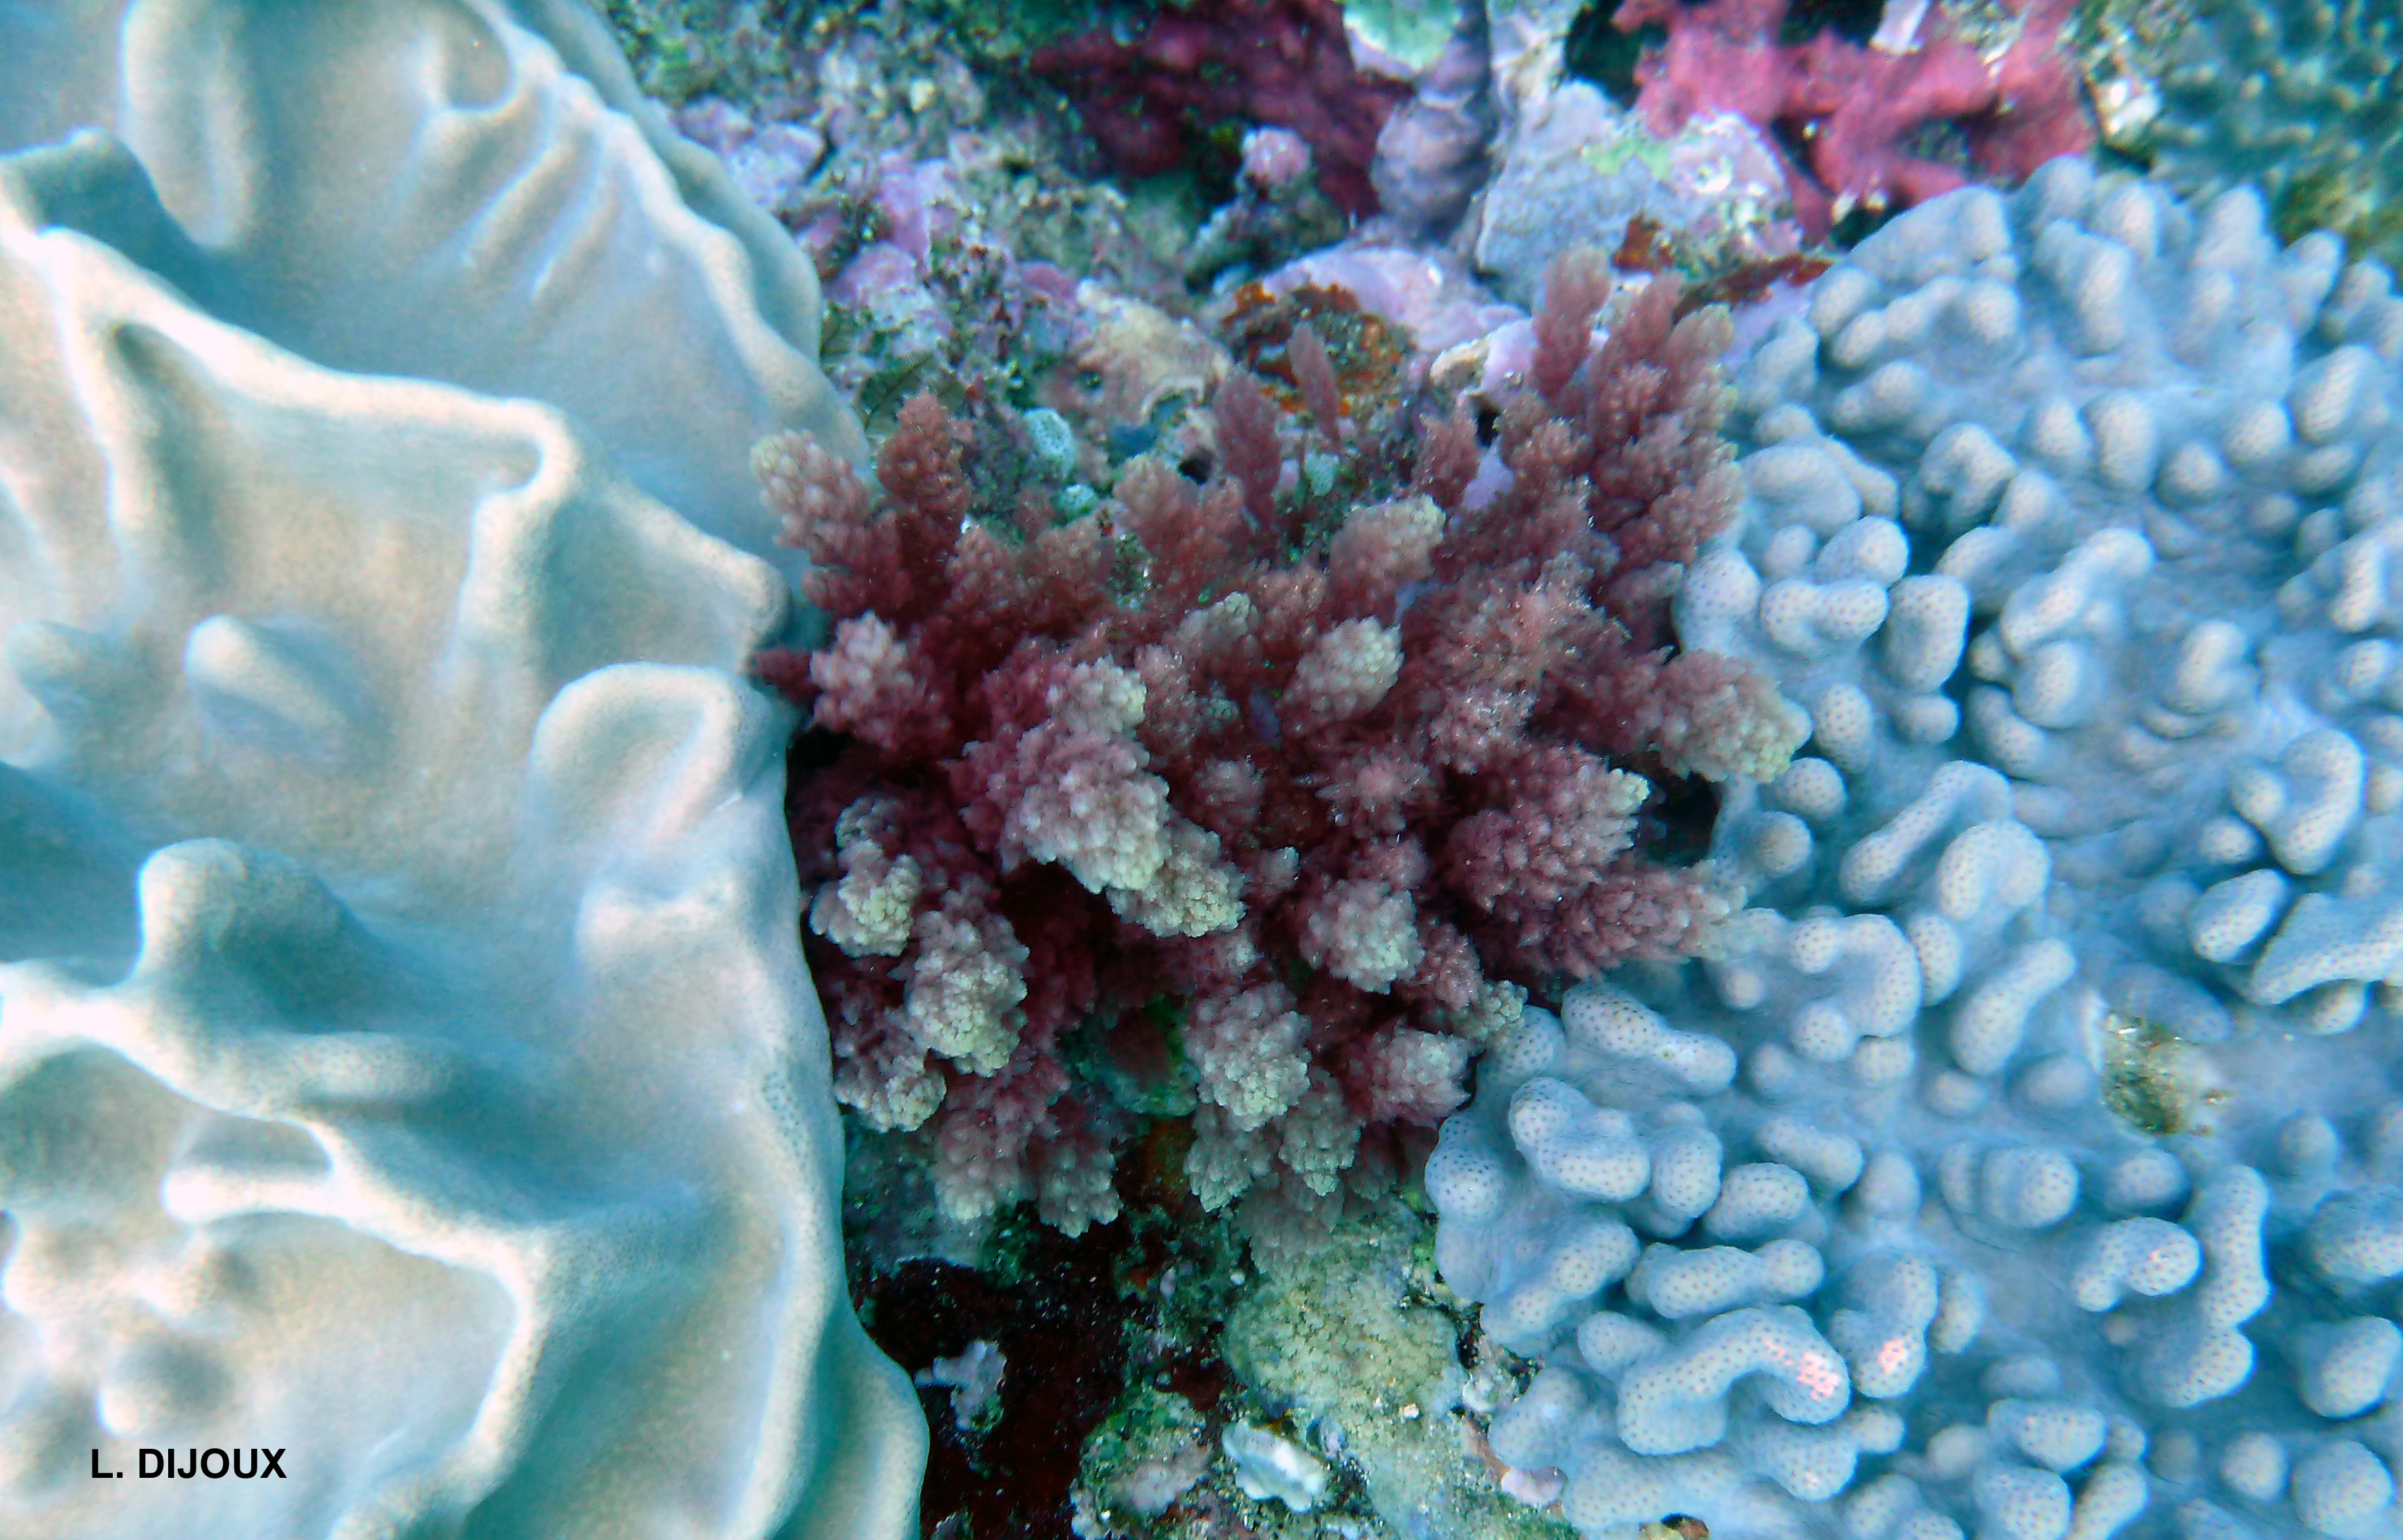 Asparagopsis taxiformis - Coral interactions